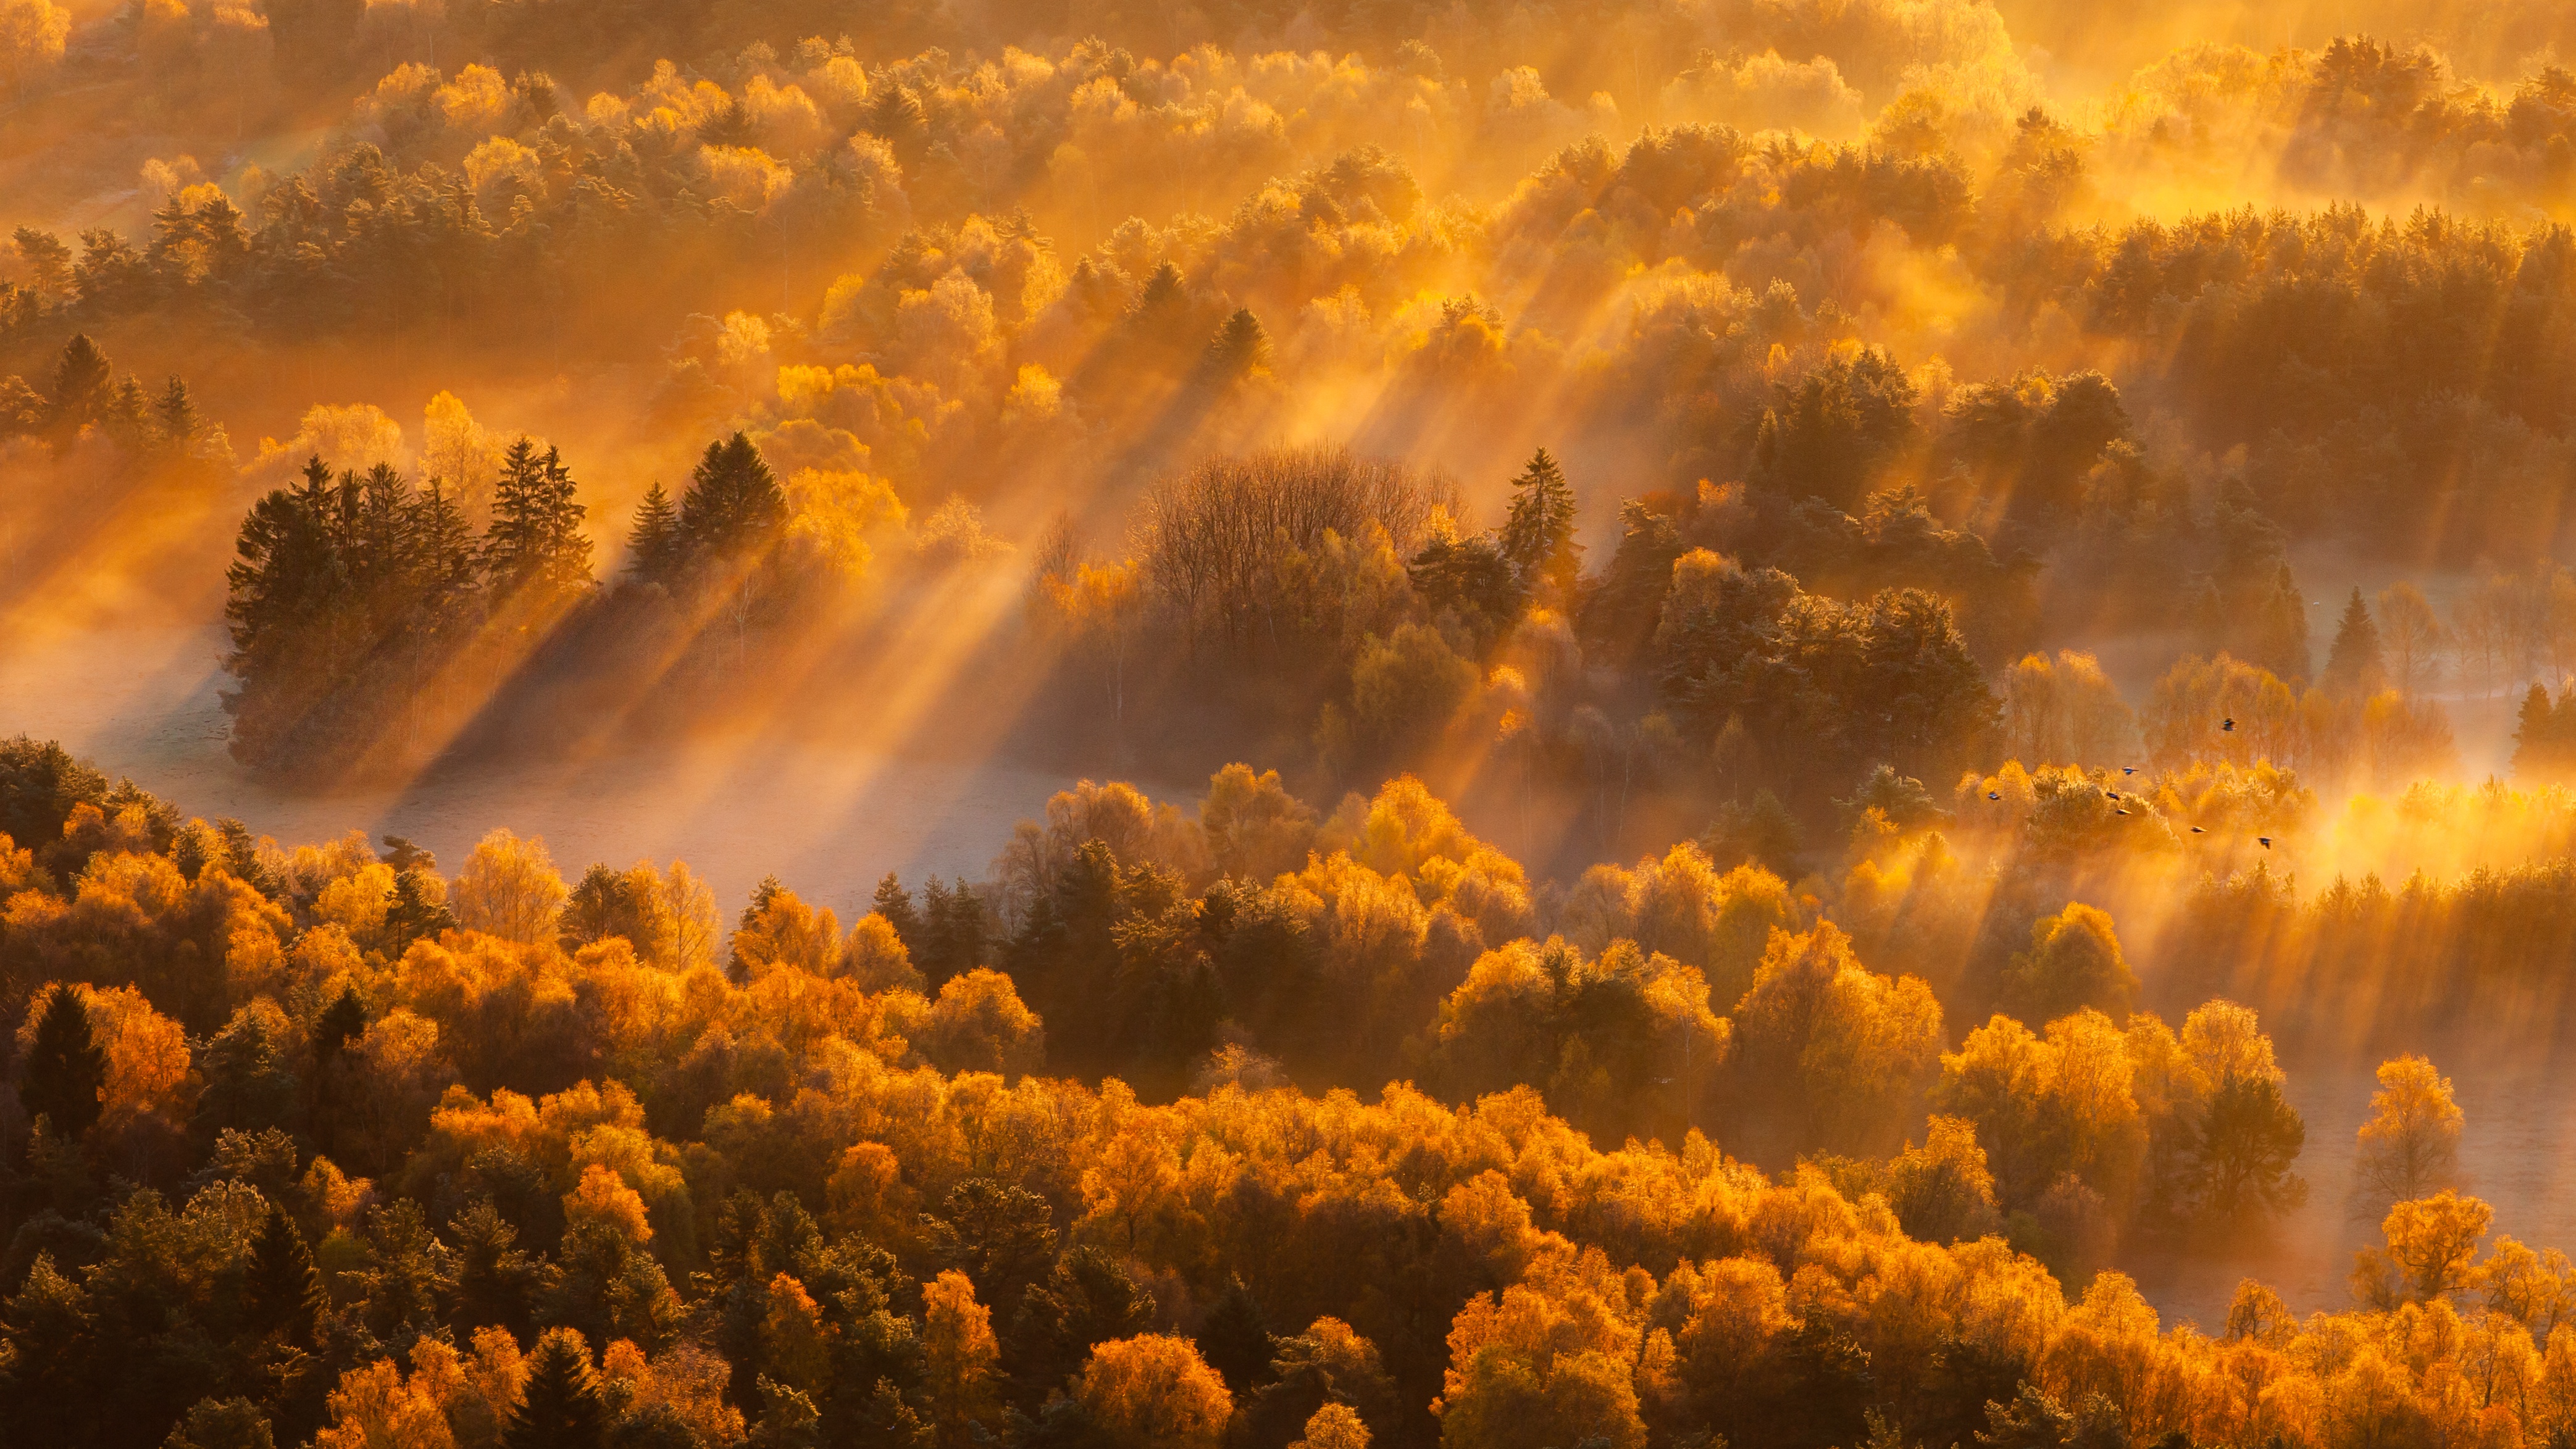 Скачать обои бесплатно Природа, Осень, Лес, Туман, Солнечный Луч, Земля/природа картинка на рабочий стол ПК